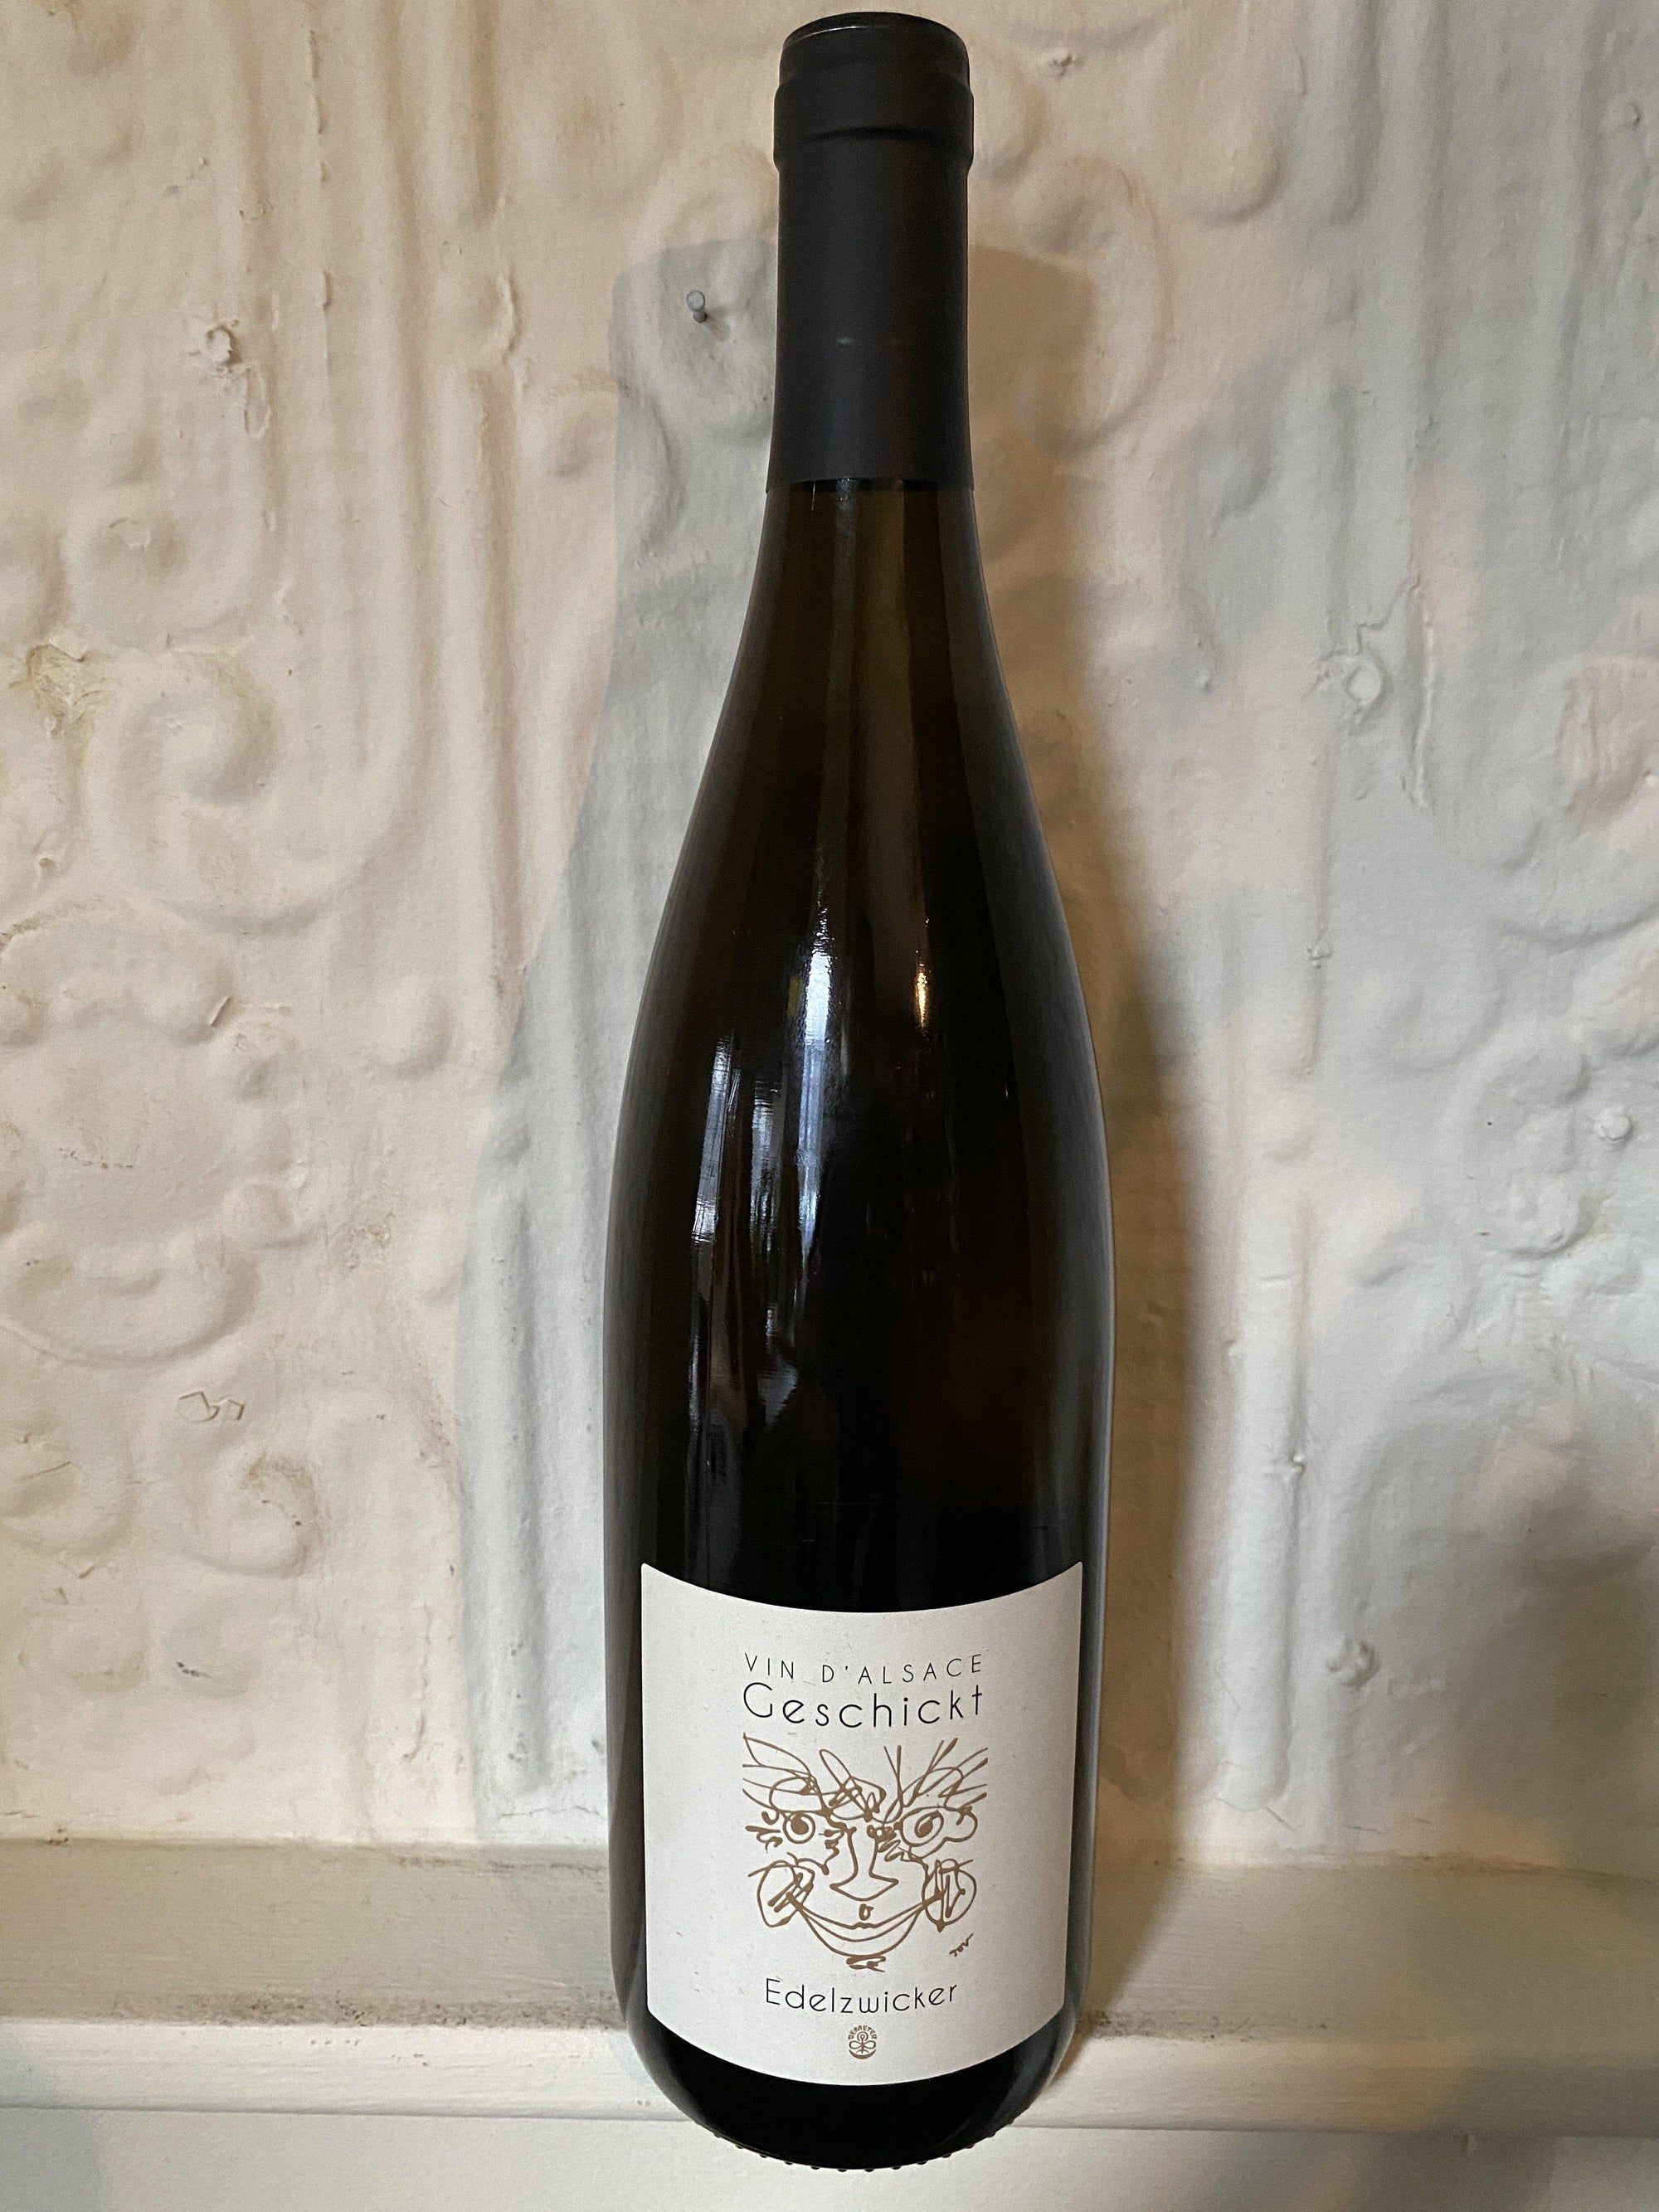 Edelzwicker, Domaine Geschickt 2018 (Alsace, France)-Wine-Bibber & Bell